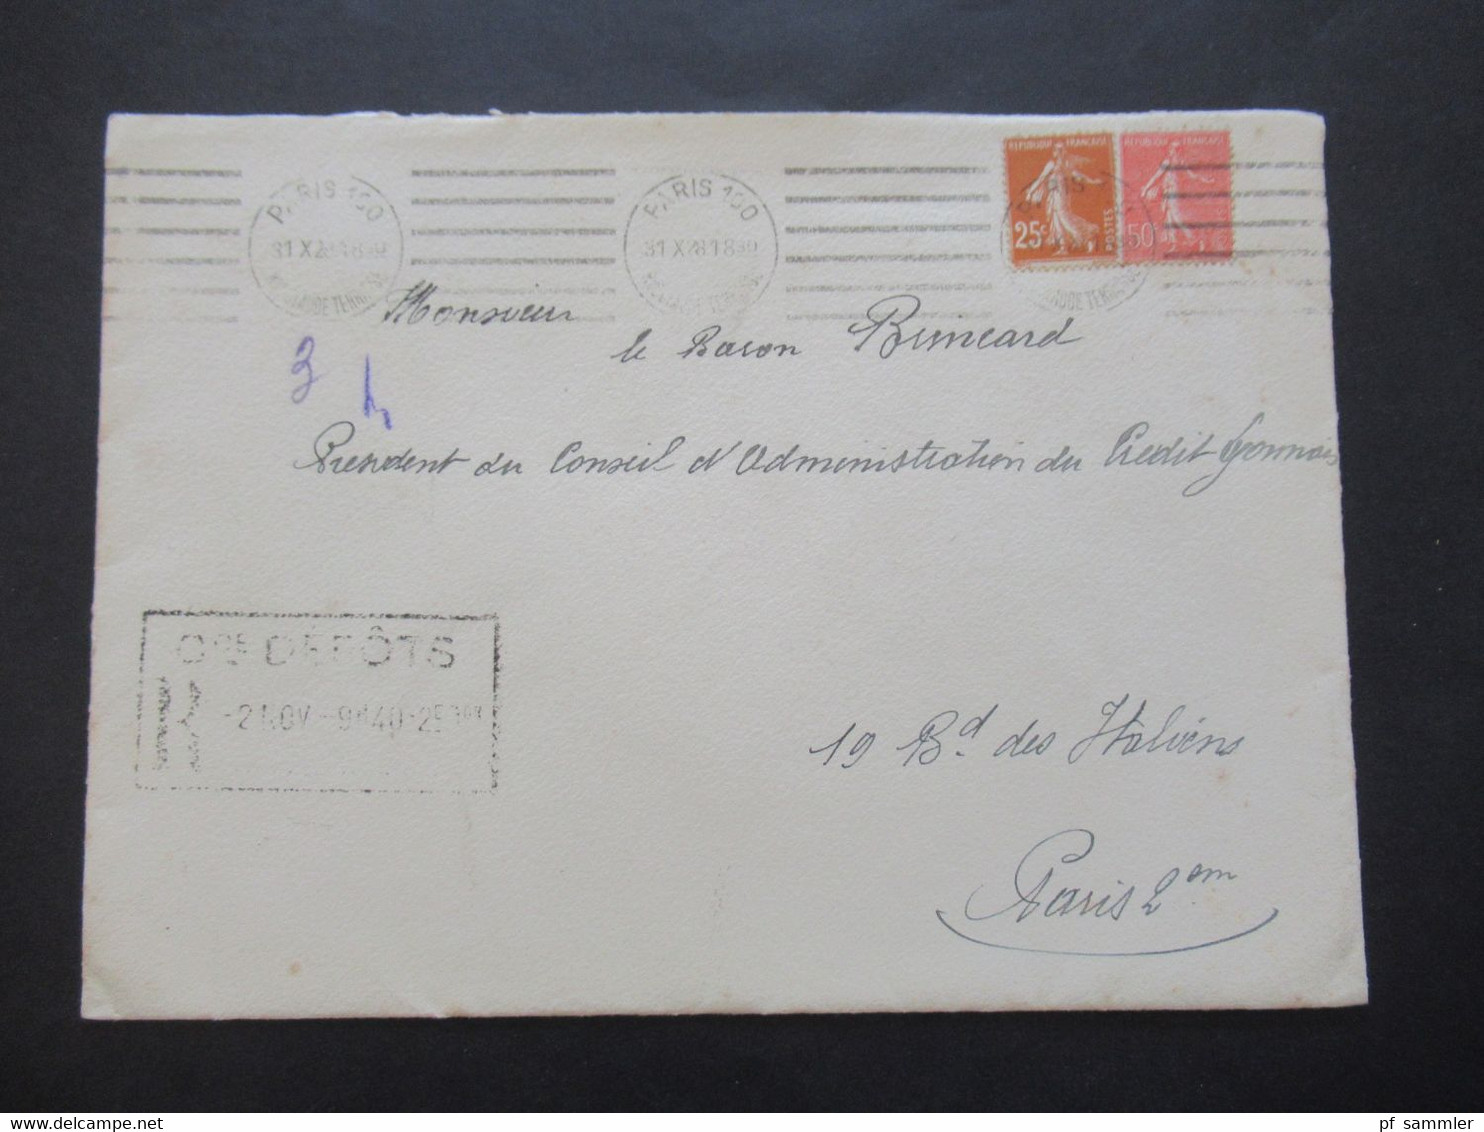 Frankreich 1928 Umschlag Mit Original Einladungskarte Exposition Coloniale Int. De Paris 1931 Gaston Doumergue President - Lettres & Documents